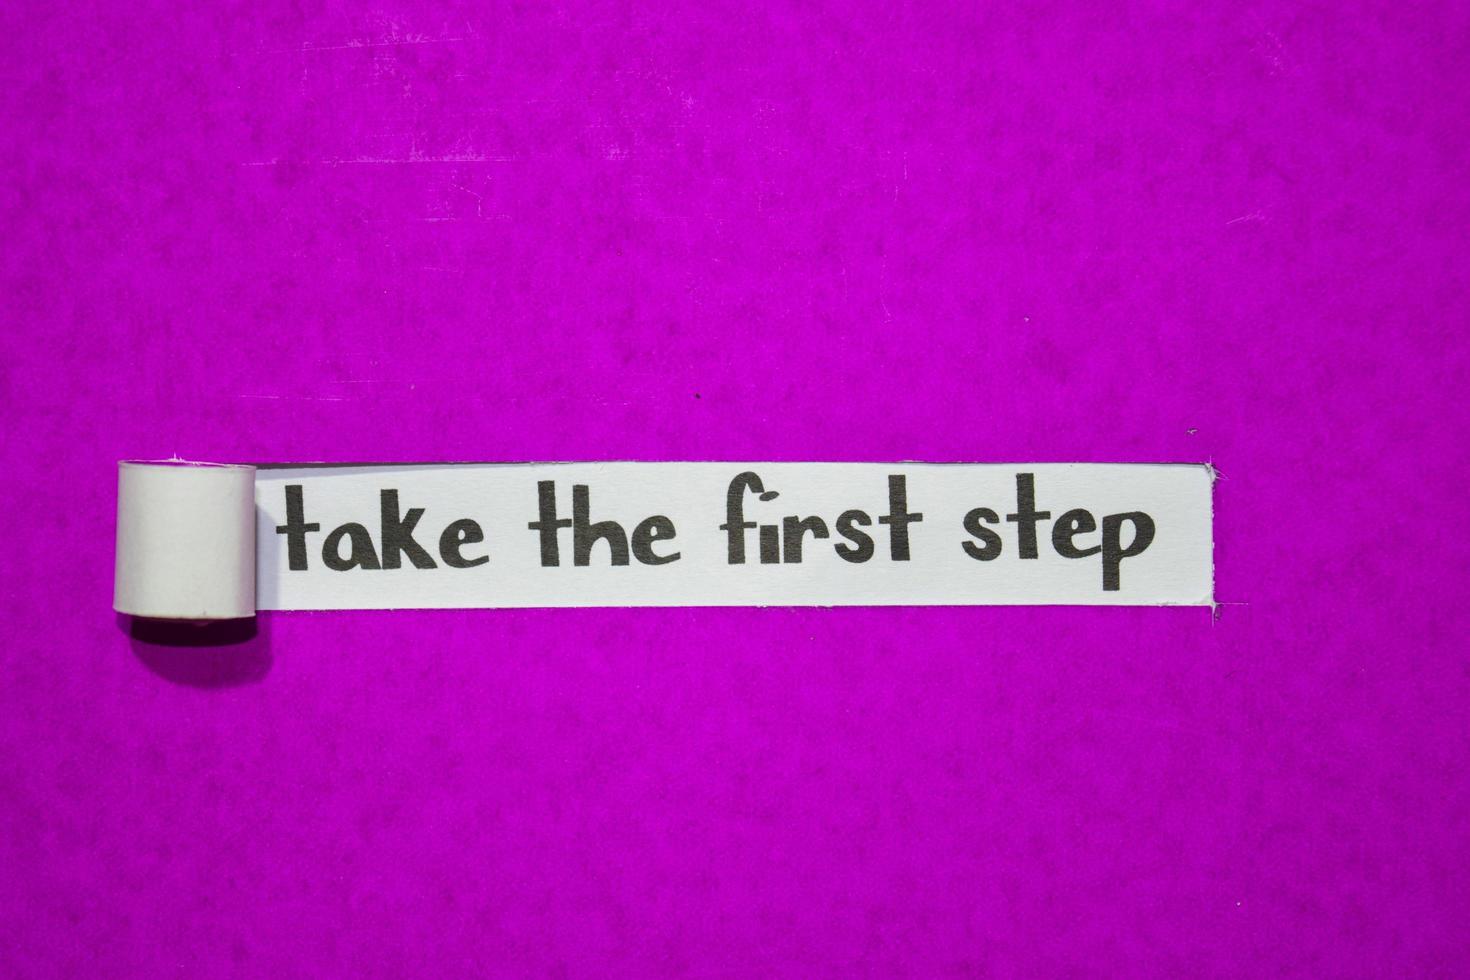 dar el primer paso texto, inspiración, motivación y concepto de negocio en papel rasgado violeta foto